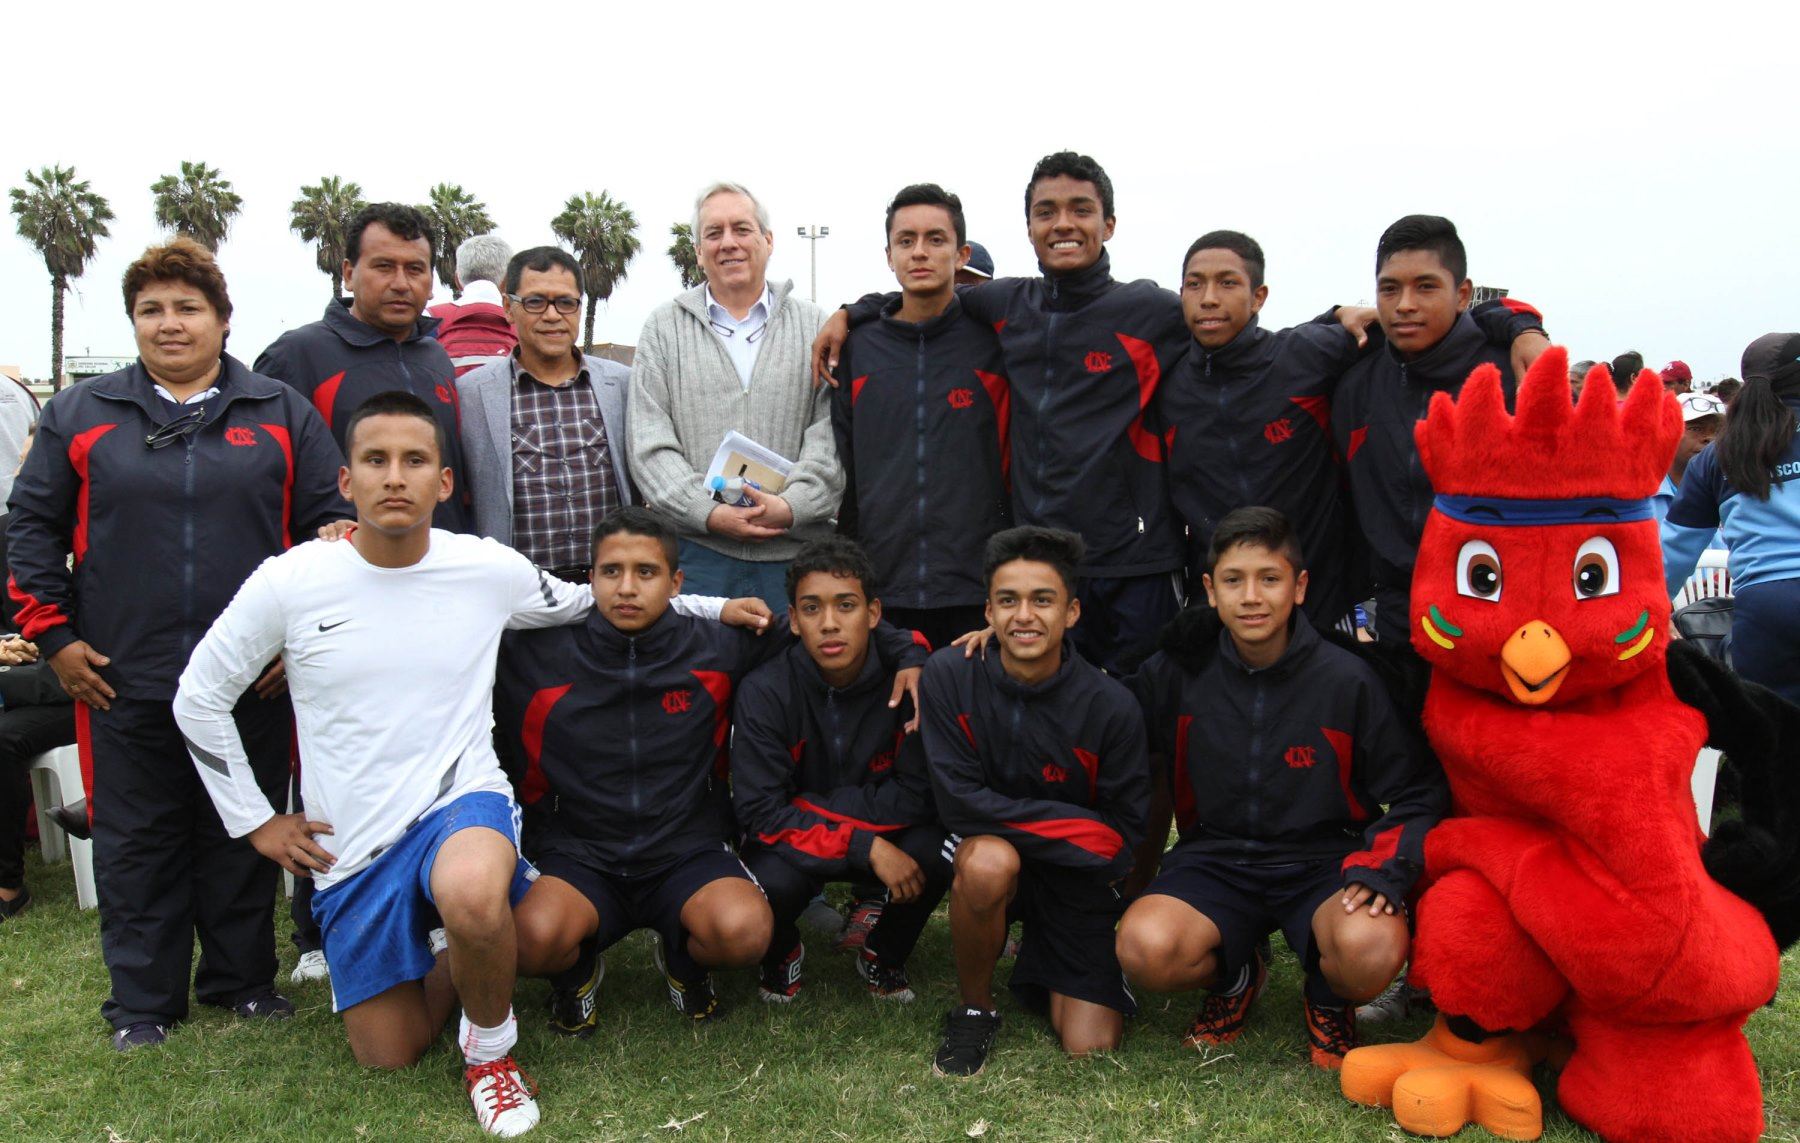 Equipo del colegio Señor de los Milagros, de Ica, obtuvo la medalla de oro de Juegos Deportivos Escolares Nacionales 2015, en la categoría de fútbol de varones.